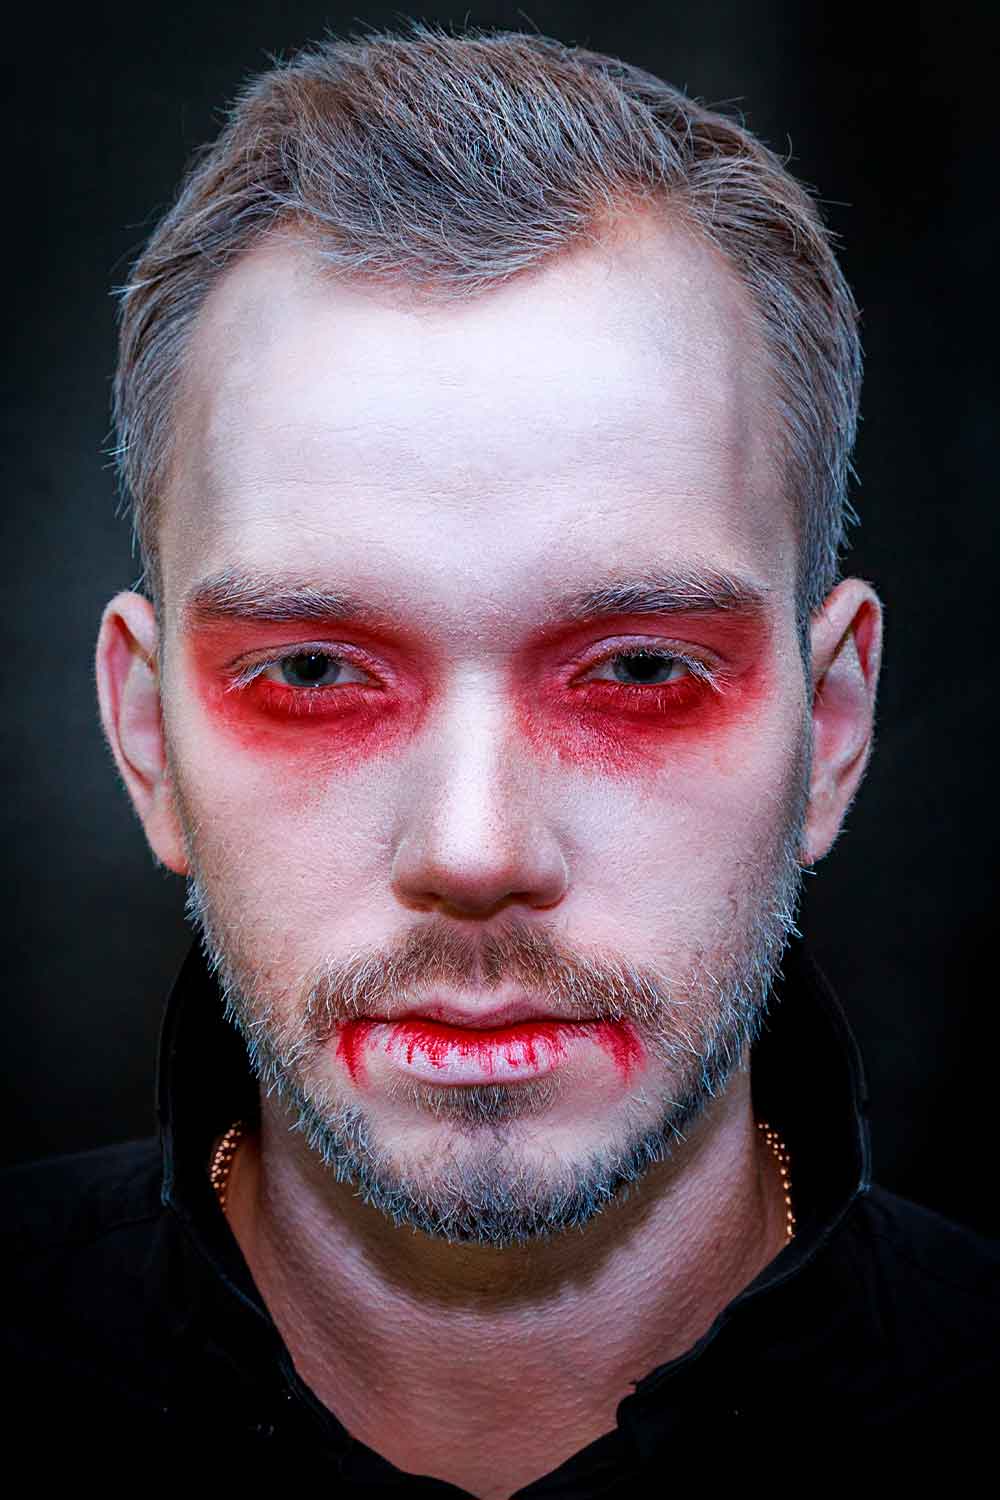 White Face Red Eyes #halloweenmakeupformen #menshalloweenmakeup